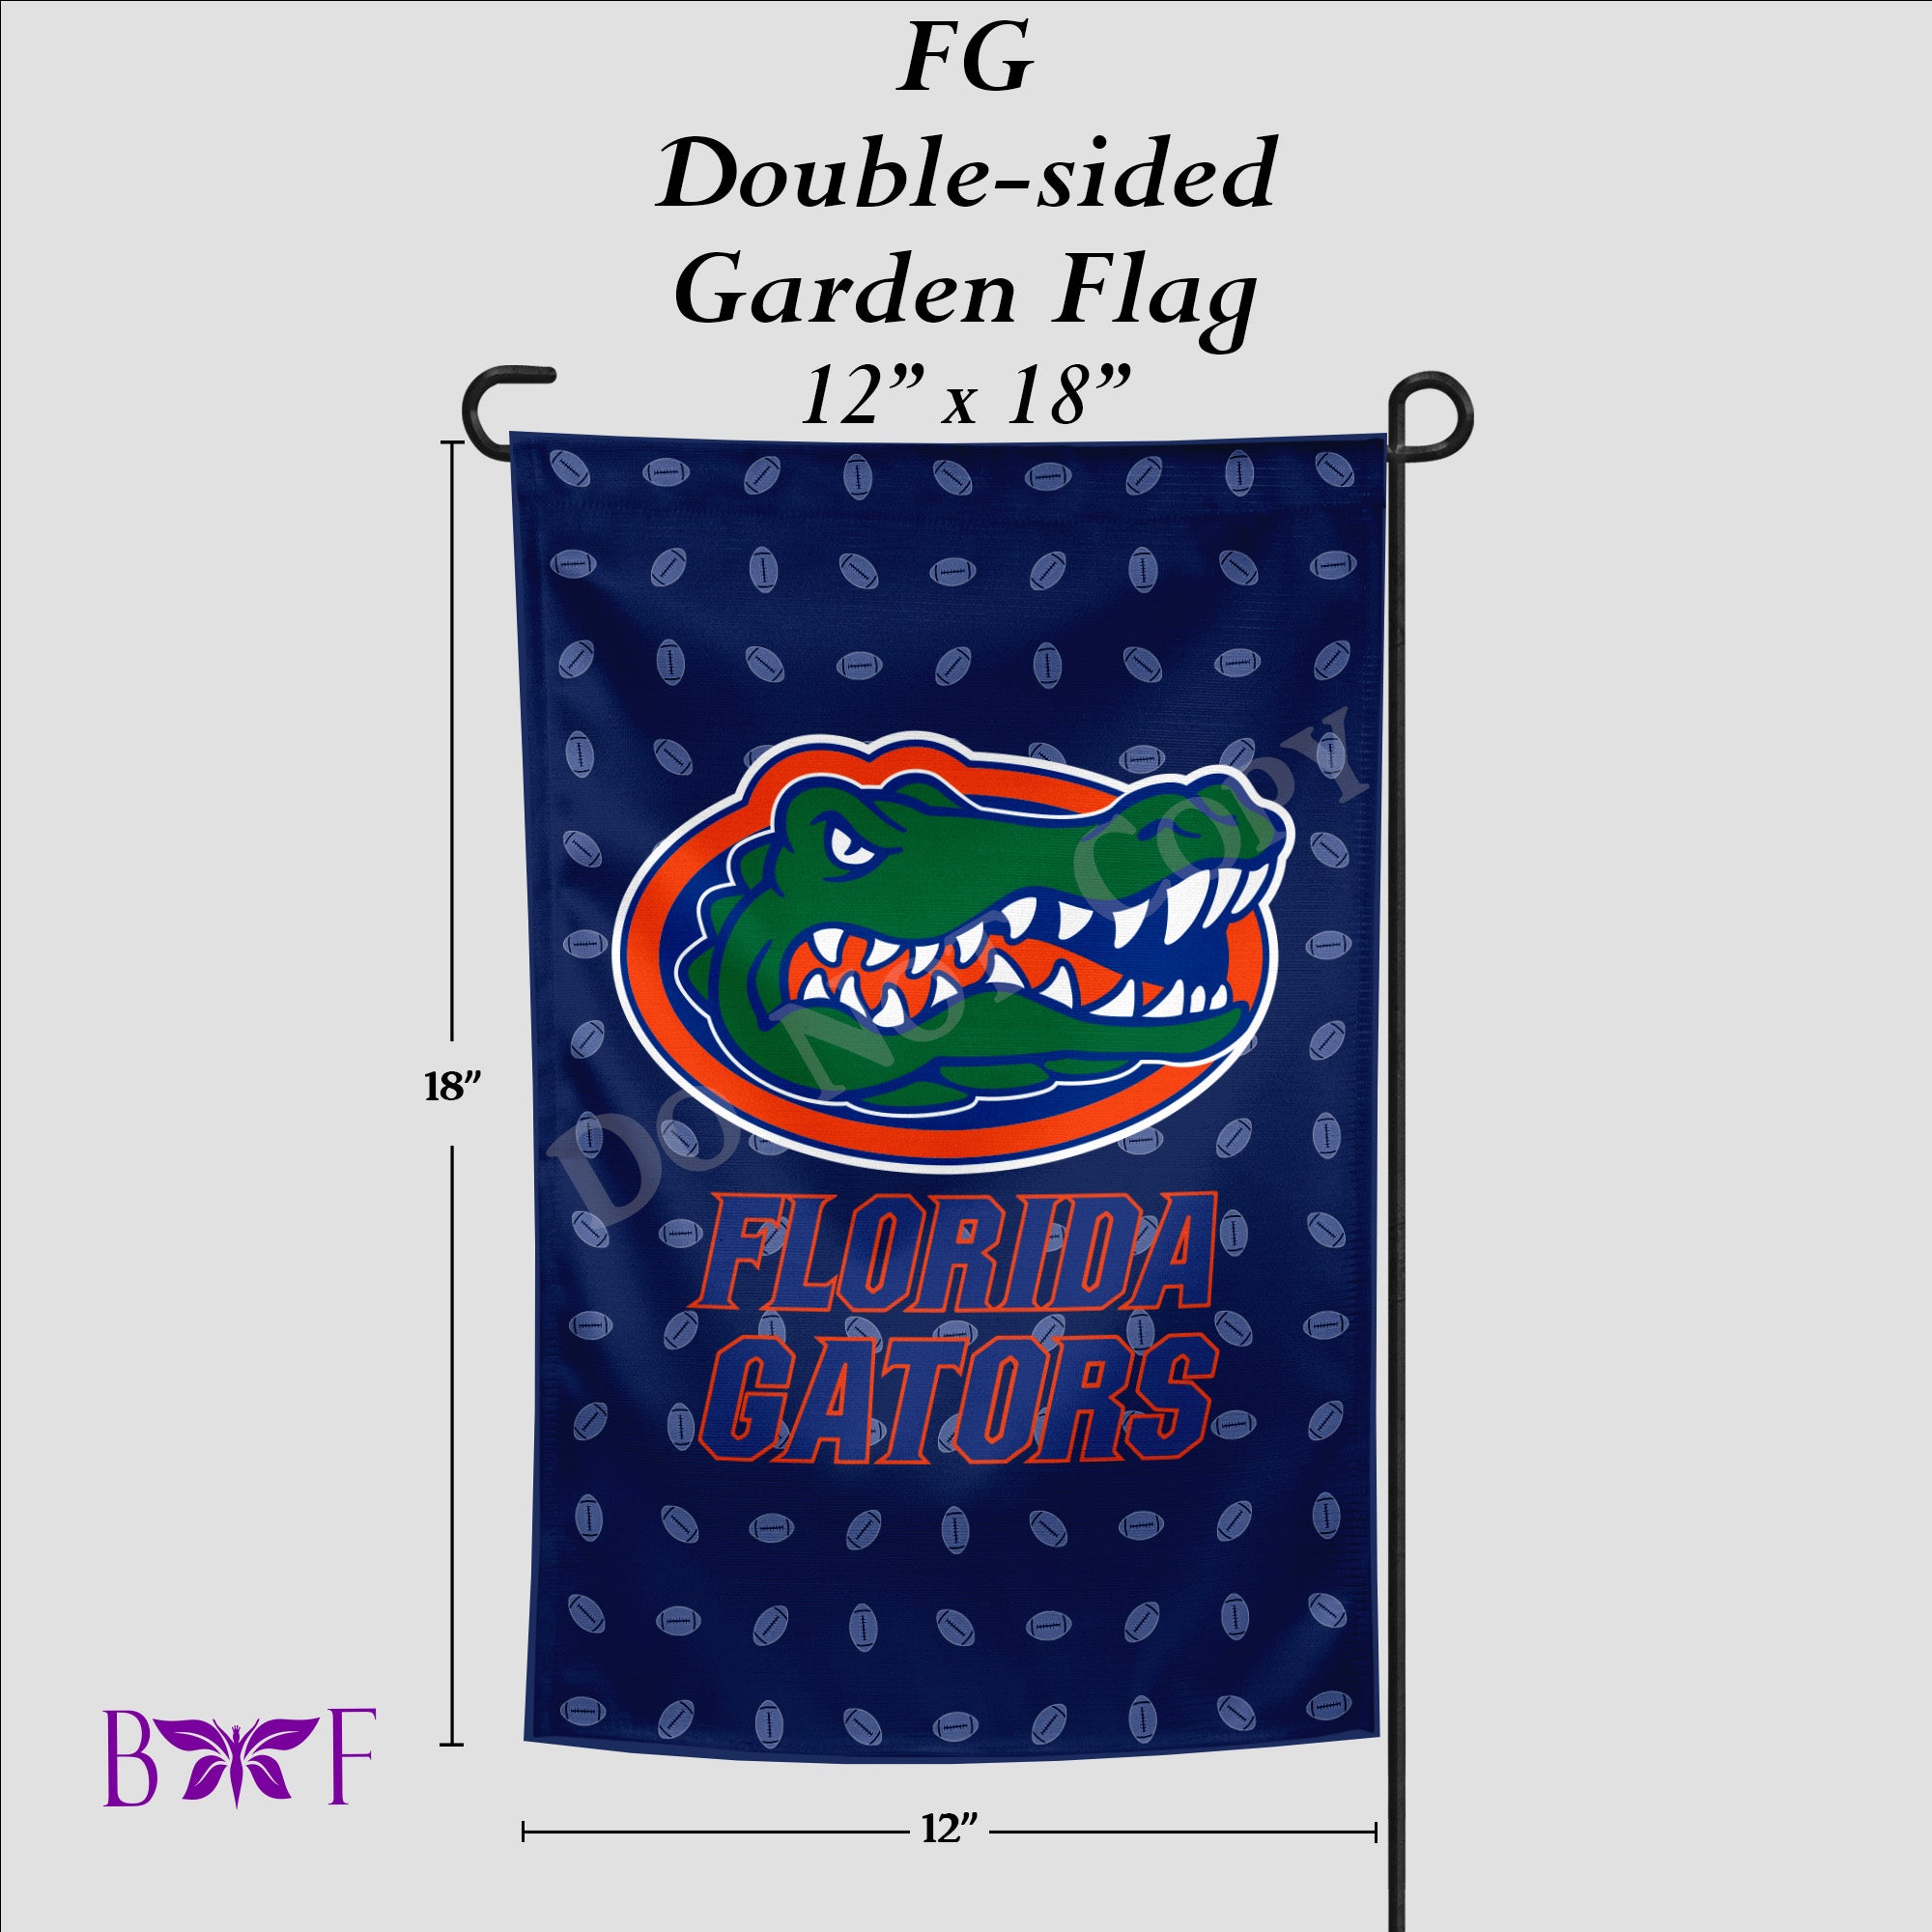 FG Garden Flag